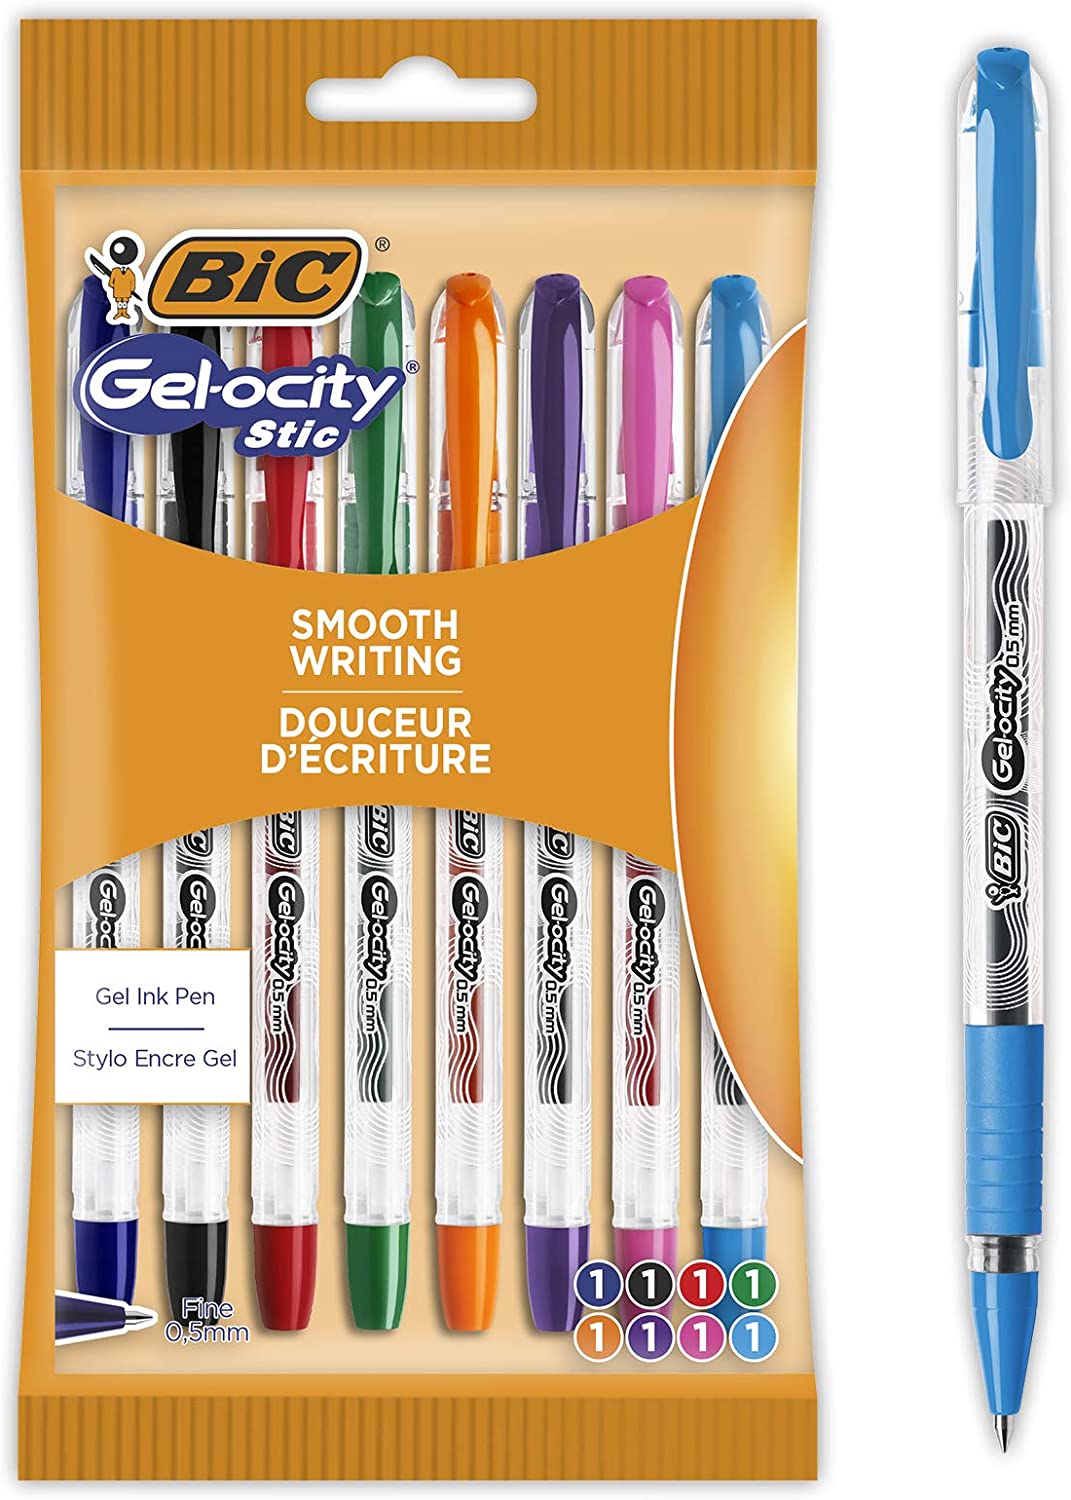 Lot de 8 stylos à encre gel à pointe fine (0,5 mm) BIC Gel-ocity Stic –  Zone Affaire